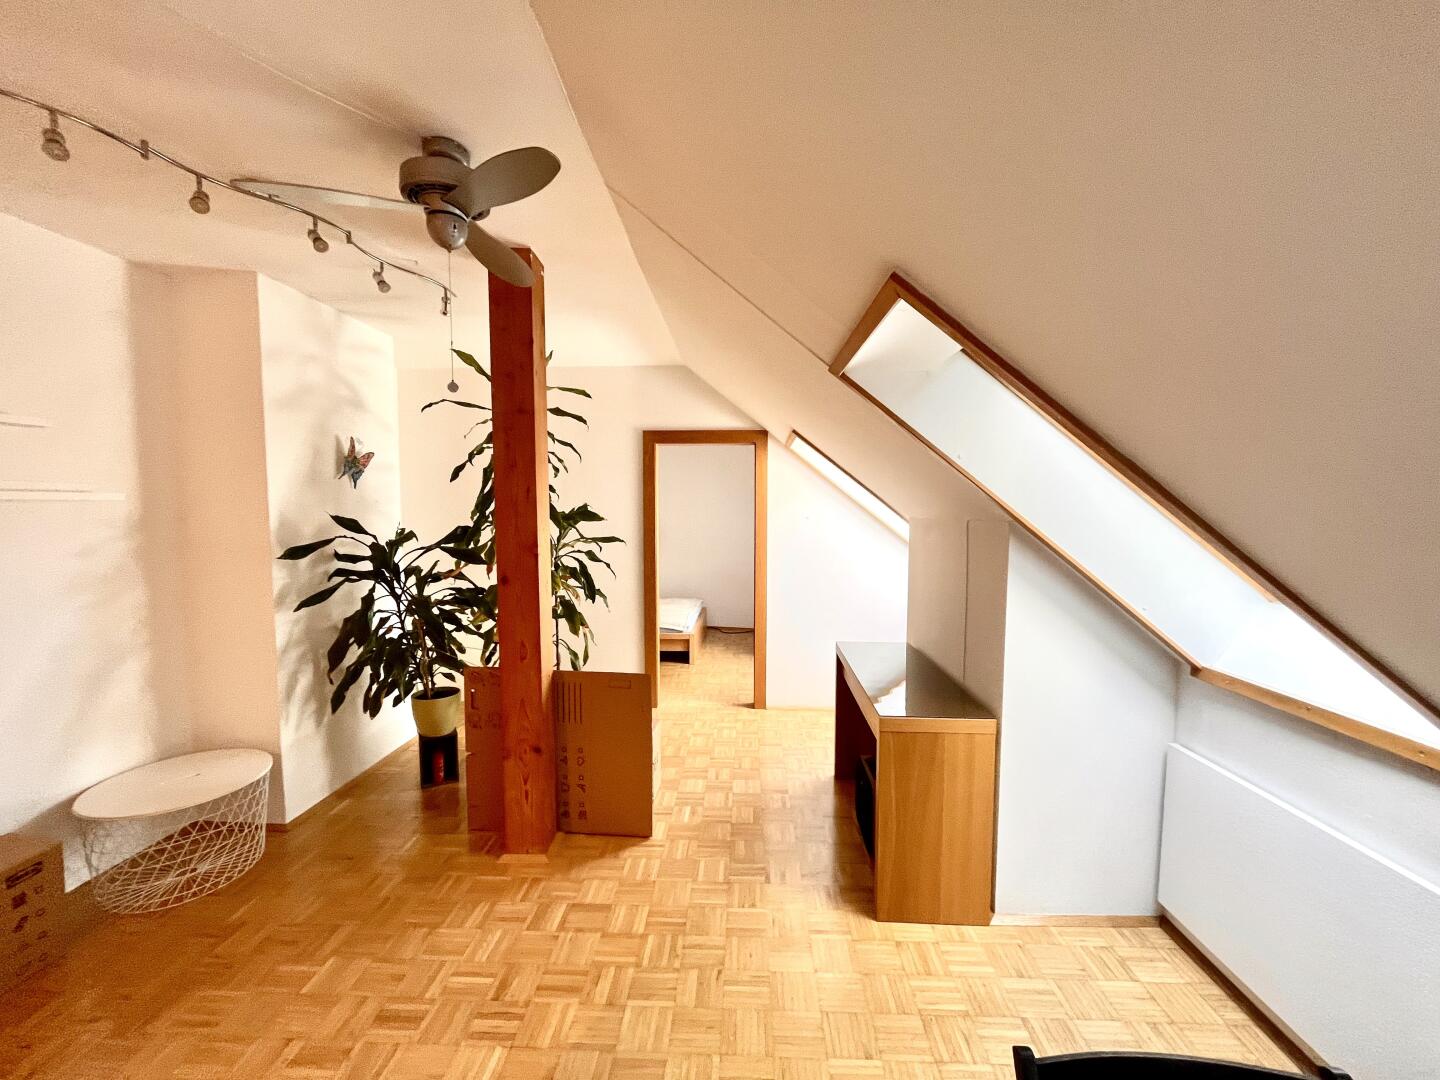 Ateliercharakter: Wohnen unter dem Dach: 2-Zimmerwohnung mit offener Küche. Top Infrastruktur